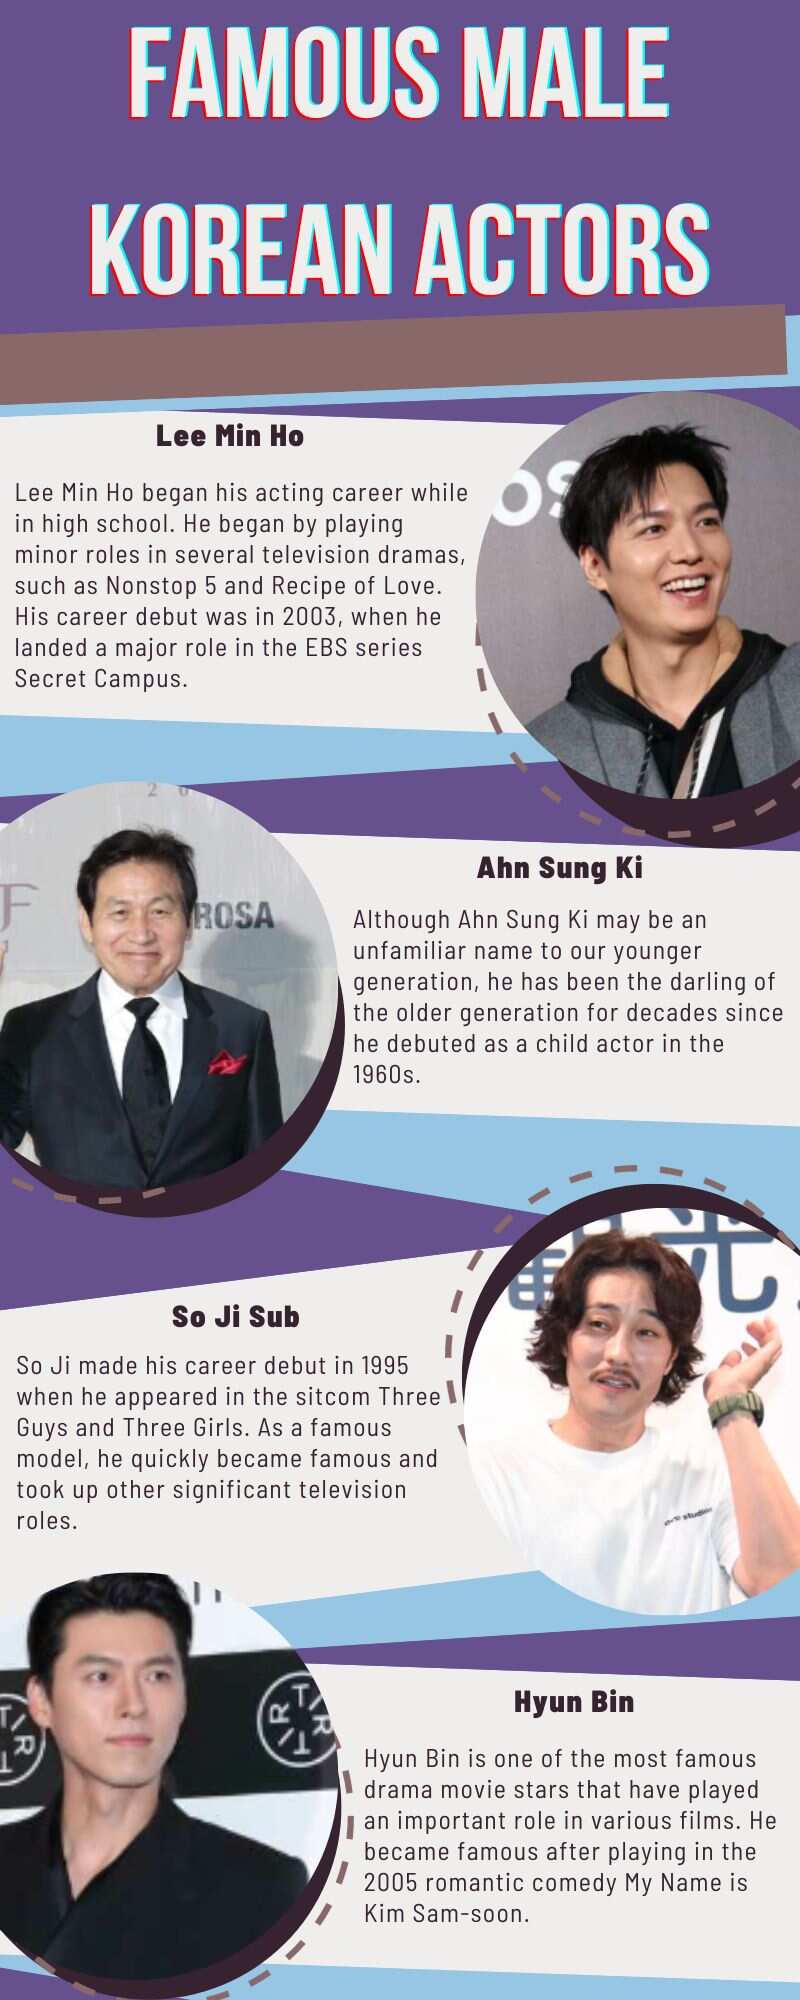 Famous male Korean actors